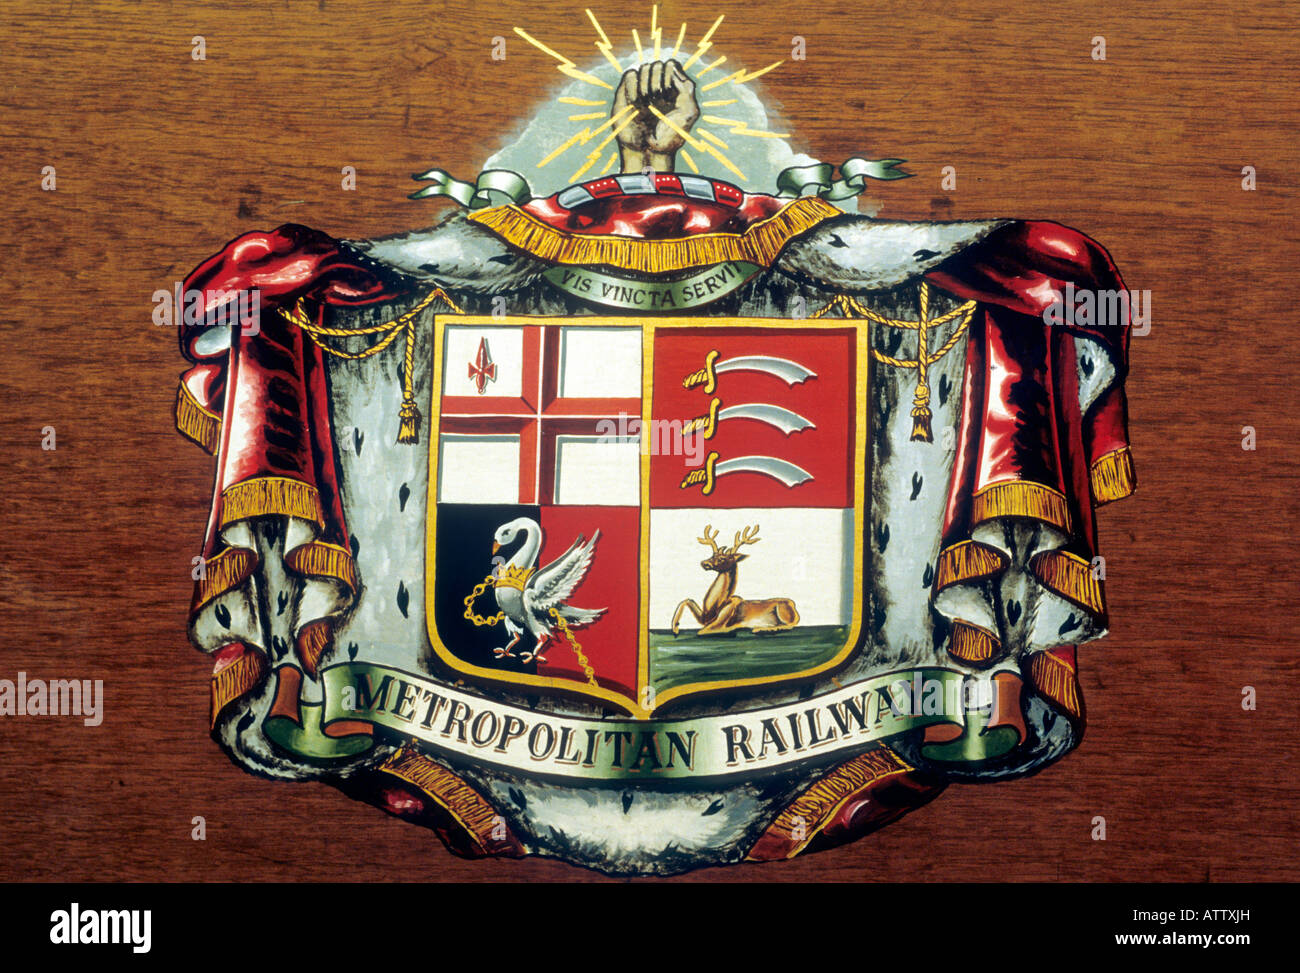 London Transport Museum Metropolitan Railway héraldique blason de voyage souterrain England UK Banque D'Images